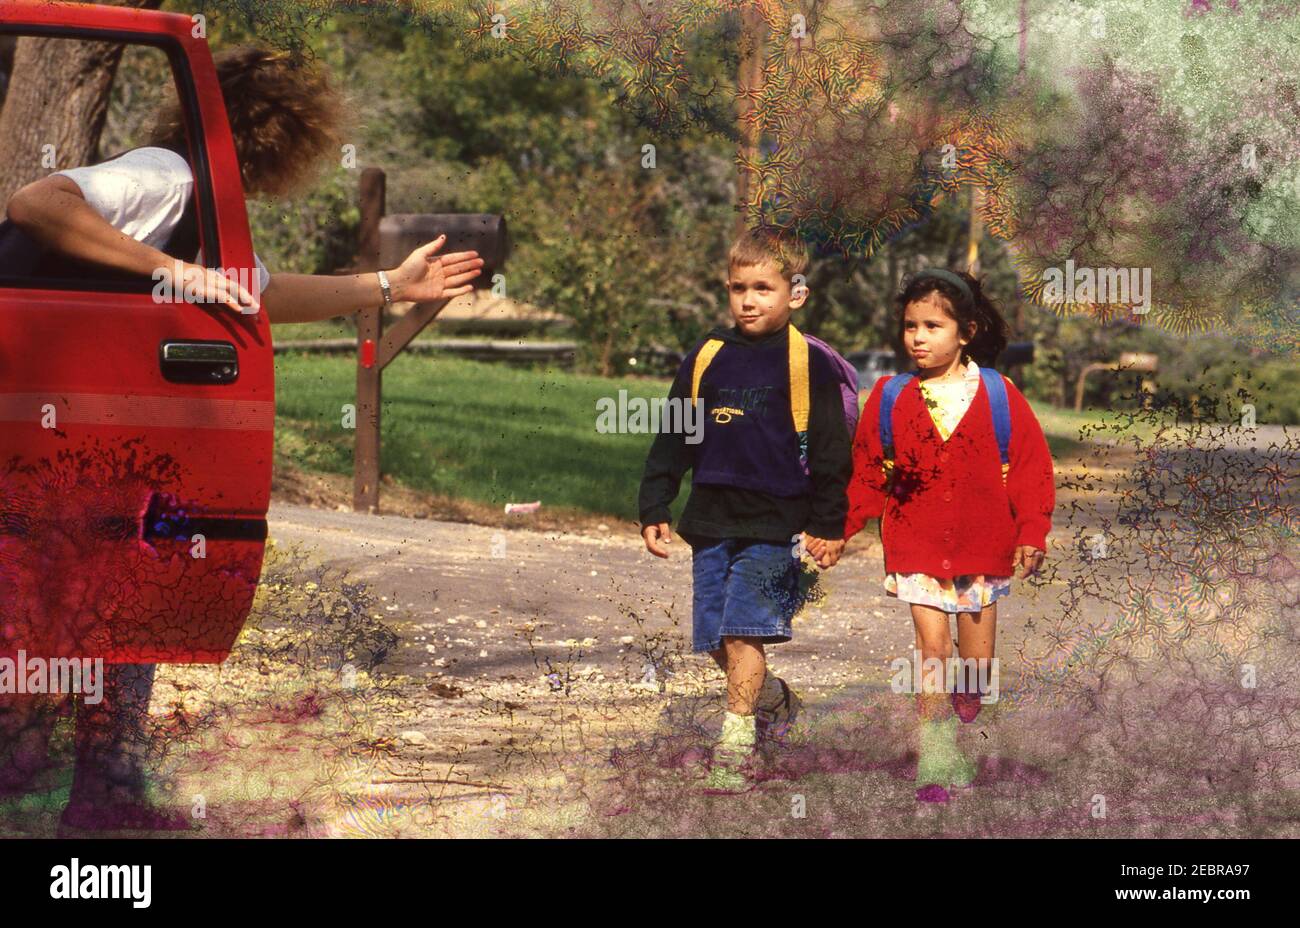 Stranger Danger: 3rd graders walking home from school avoid stranger in car, 1994 Model Released EI-0319-0321. ©Bob Daemmrich Stock Photo